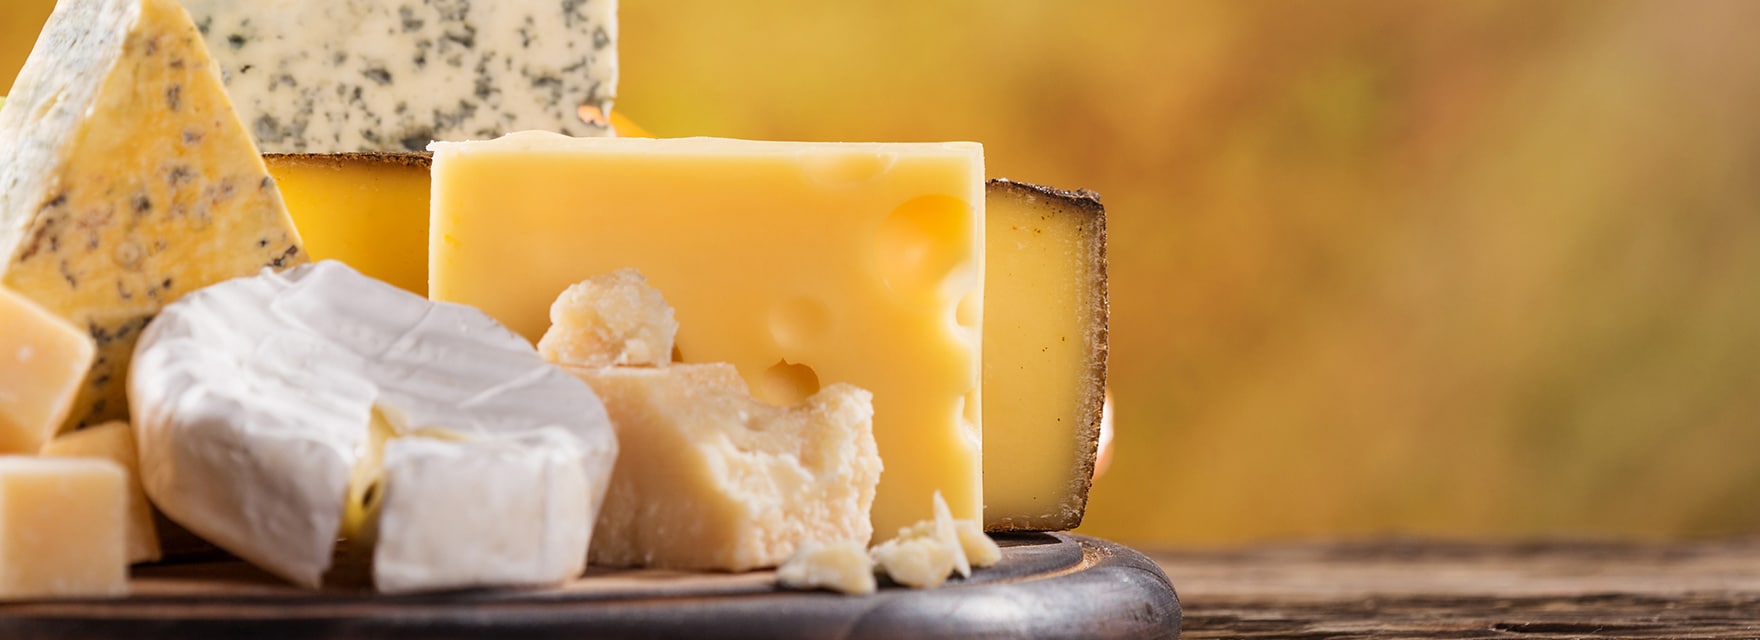 Co obsahuje tavený sýr ERU?